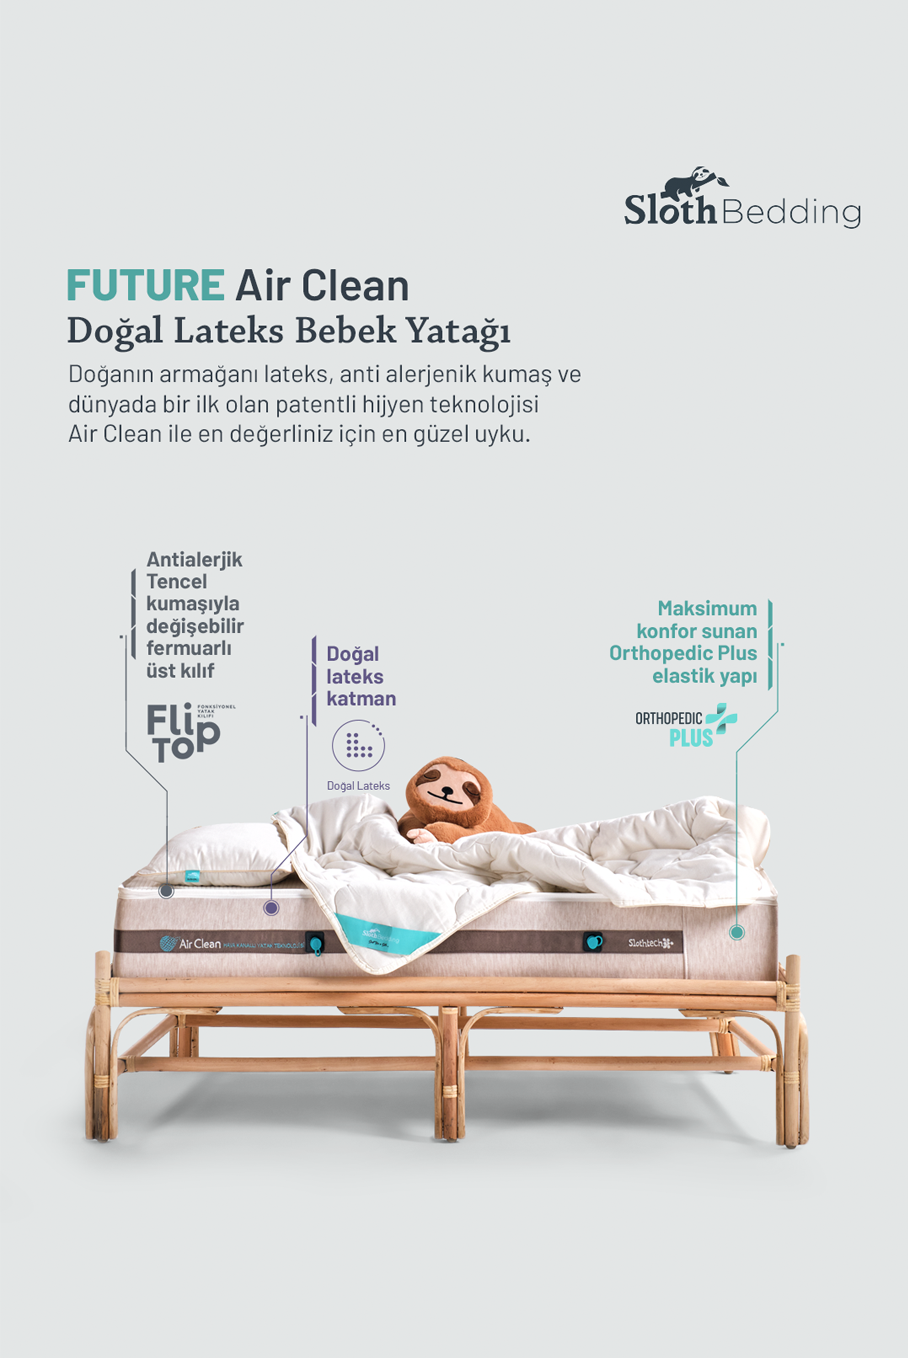 FUTURE AIR CLEAN YATAK